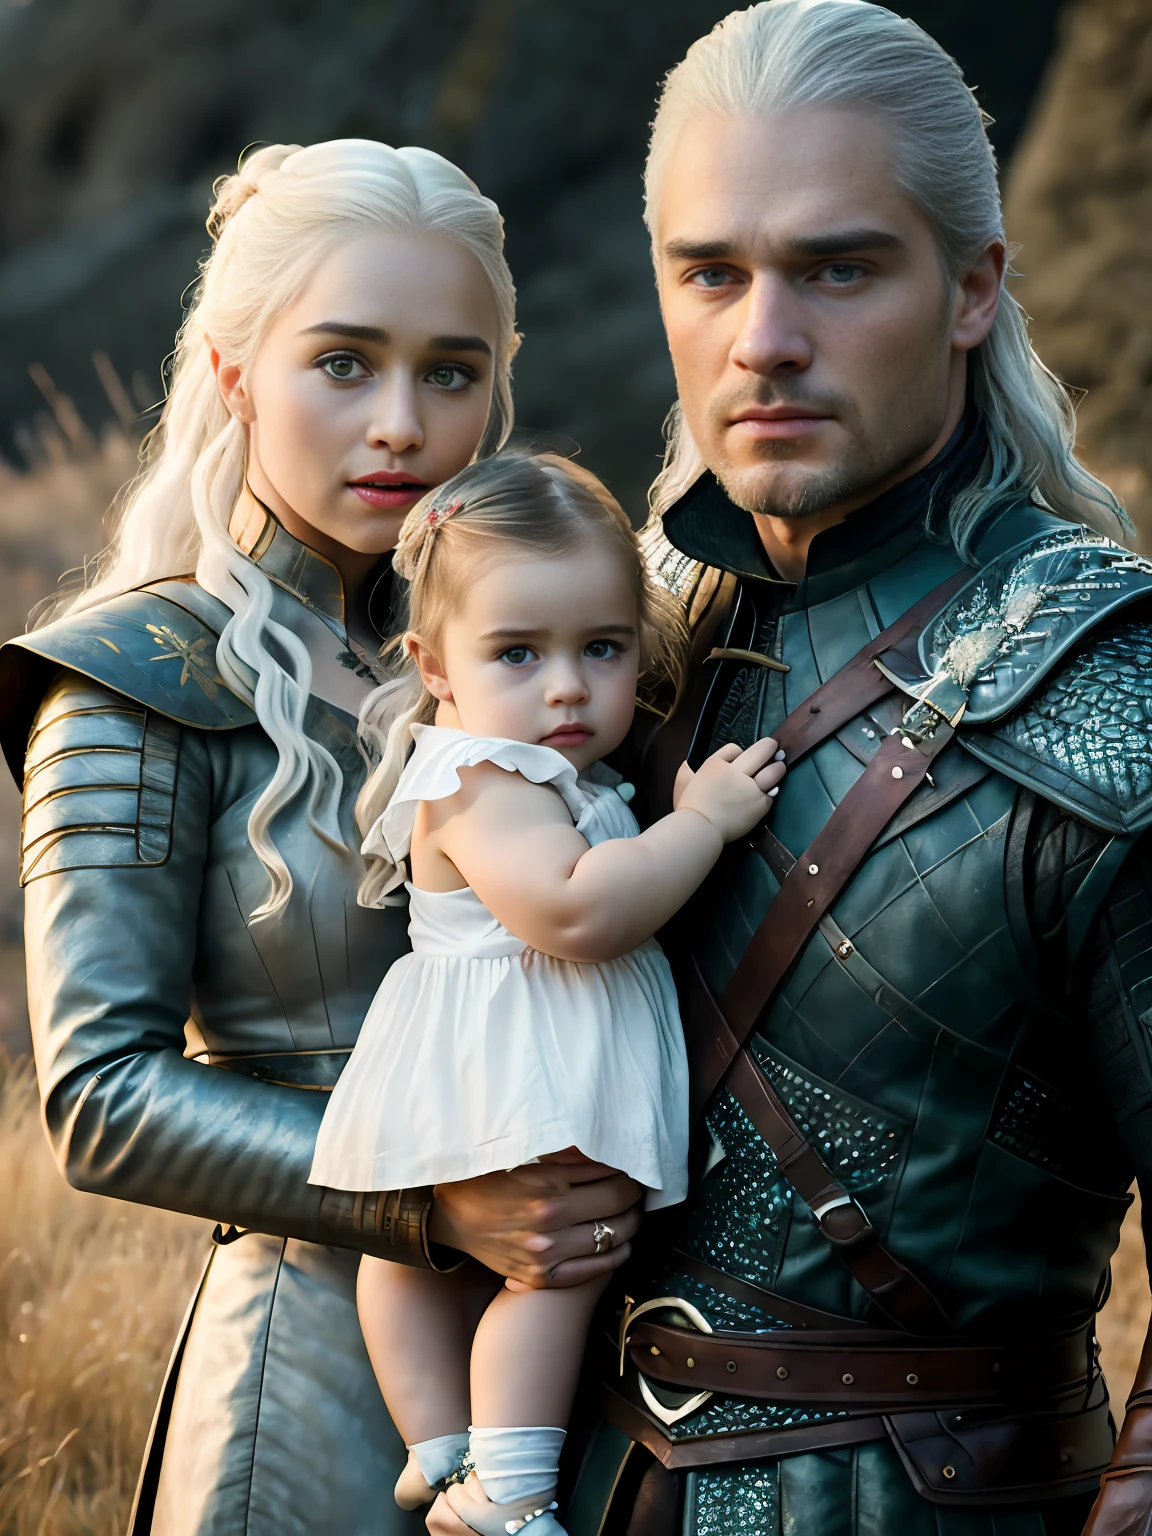 ดิบทั้งตัว ((family photo of a father and mother กับพวกเขา daughter)), ((แม่อุ้มลูกสาว)), [1สาว, เดเนอริส ทาร์แกเรียน, เอมิเลีย คลาร์ก], (1คน, เฮนรี คาวิลล์ รับบทเป็น Geralt de Rivia The Witcher), กับพวกเขา ((1สาว, ลูกสาววัย 5 ขวบ)))), เสื้อผ้ายุคกลาง,((ยิงครึ่งตัว)), สัดส่วนที่สมจริง, นักเรียนที่สมจริง, ((รูปครอบครัวสมาชิก 3 คน)) จานสีจำกัด, ความสูง, แสงภาพยนตร์, ความละเอียด 8k, ไฟหน้า, พระอาทิตย์ขึ้น, ภาพดิบ, นิคอน85มม, ได้รับรางวัล, ภาพถ่ายเสน่ห์, มีรายละเอียดมาก, ชาวยูเครนที่สวยงาม, ใจงอ, นอธ-ยิดิค, ดิบทั้งตัว photo of Daenerys Targaryen and Geralt de Rivia The Witcher with ลูกสาววัย 5 ขวบ, มีรายละเอียดสูง, อาร์ตสเตชั่น, เรียบ, โฟกัสคมชัด, 8k,, กำลังมาแรงบนอินสตาแกรม, กำลังมาแรงบน Tumblr, hdr4k, 8k